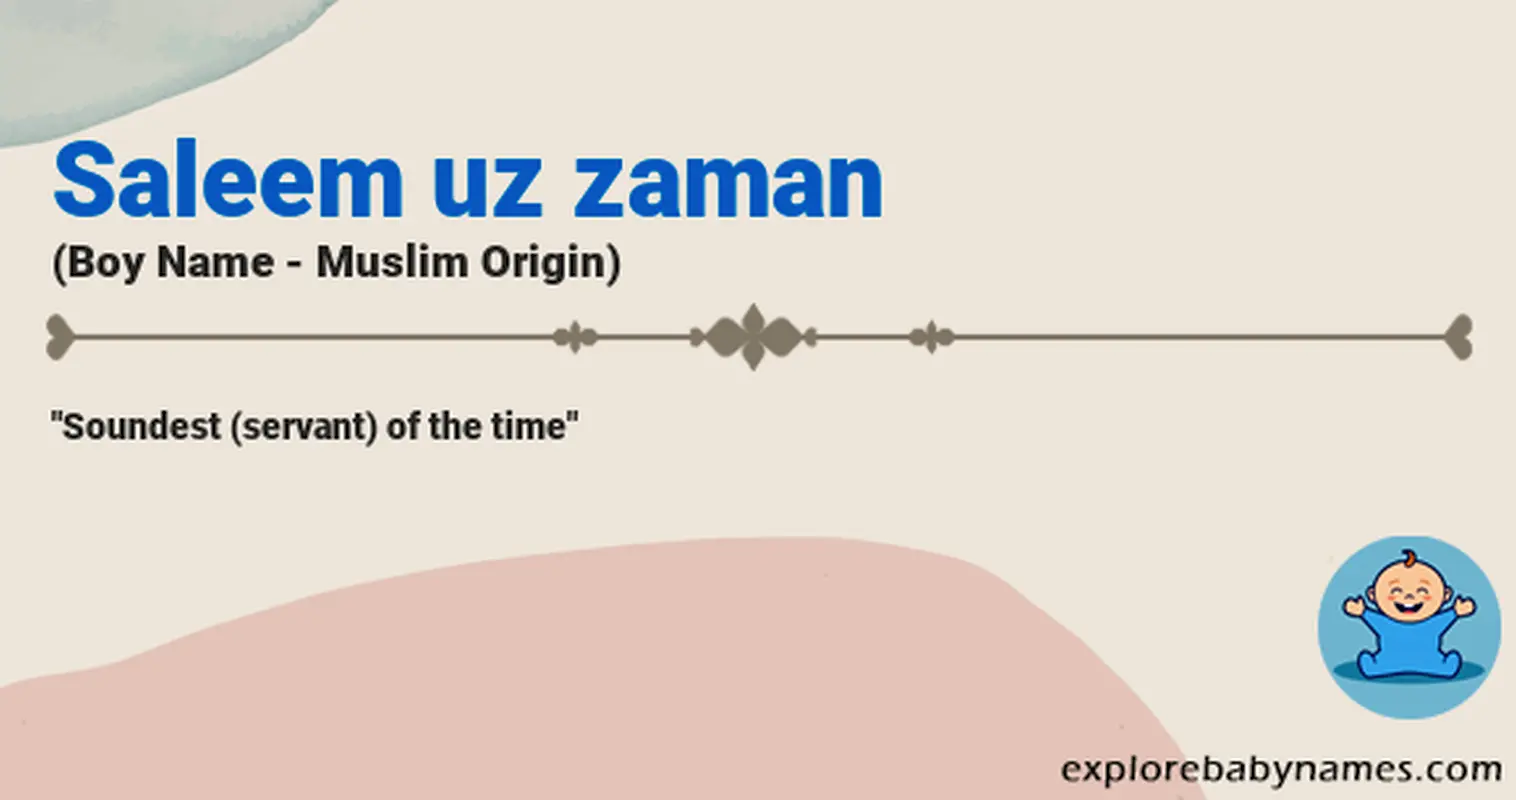 Meaning of Saleem uz zaman